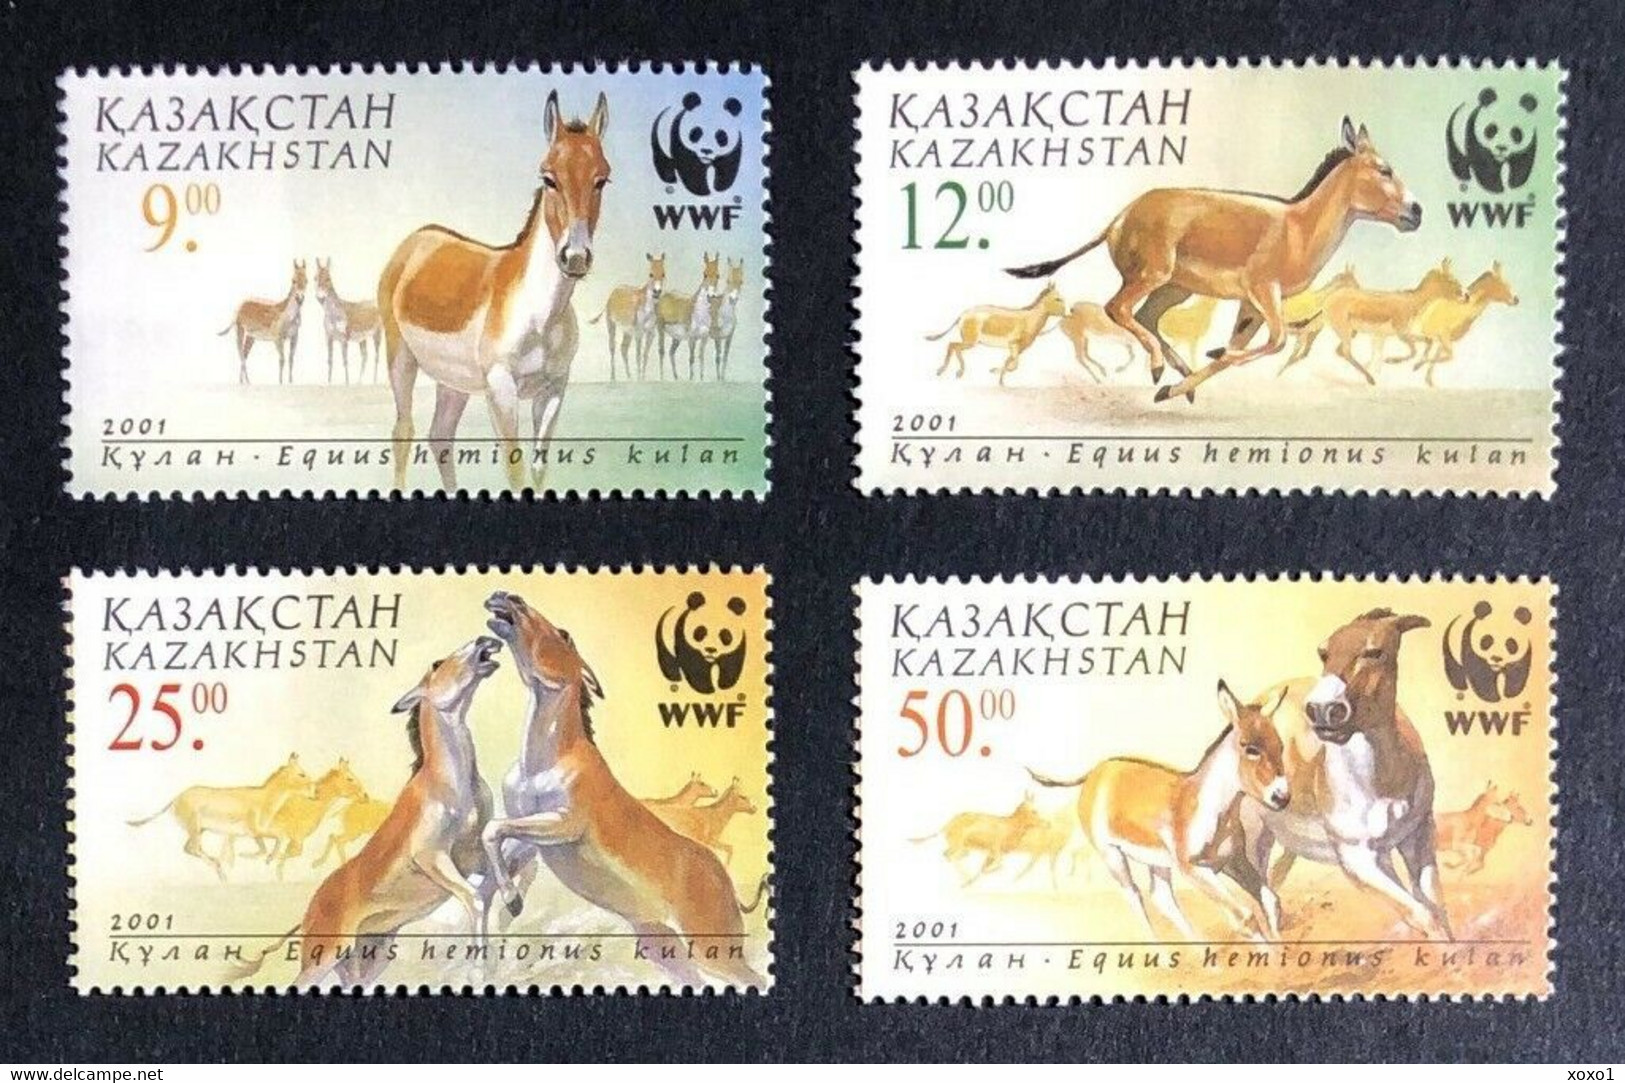 Kazakhstan 1997 MiNr. 345 - 348  Kasachstan  Animals Mammals Onager WWF 4v MNH** 5.00 € - Donkeys